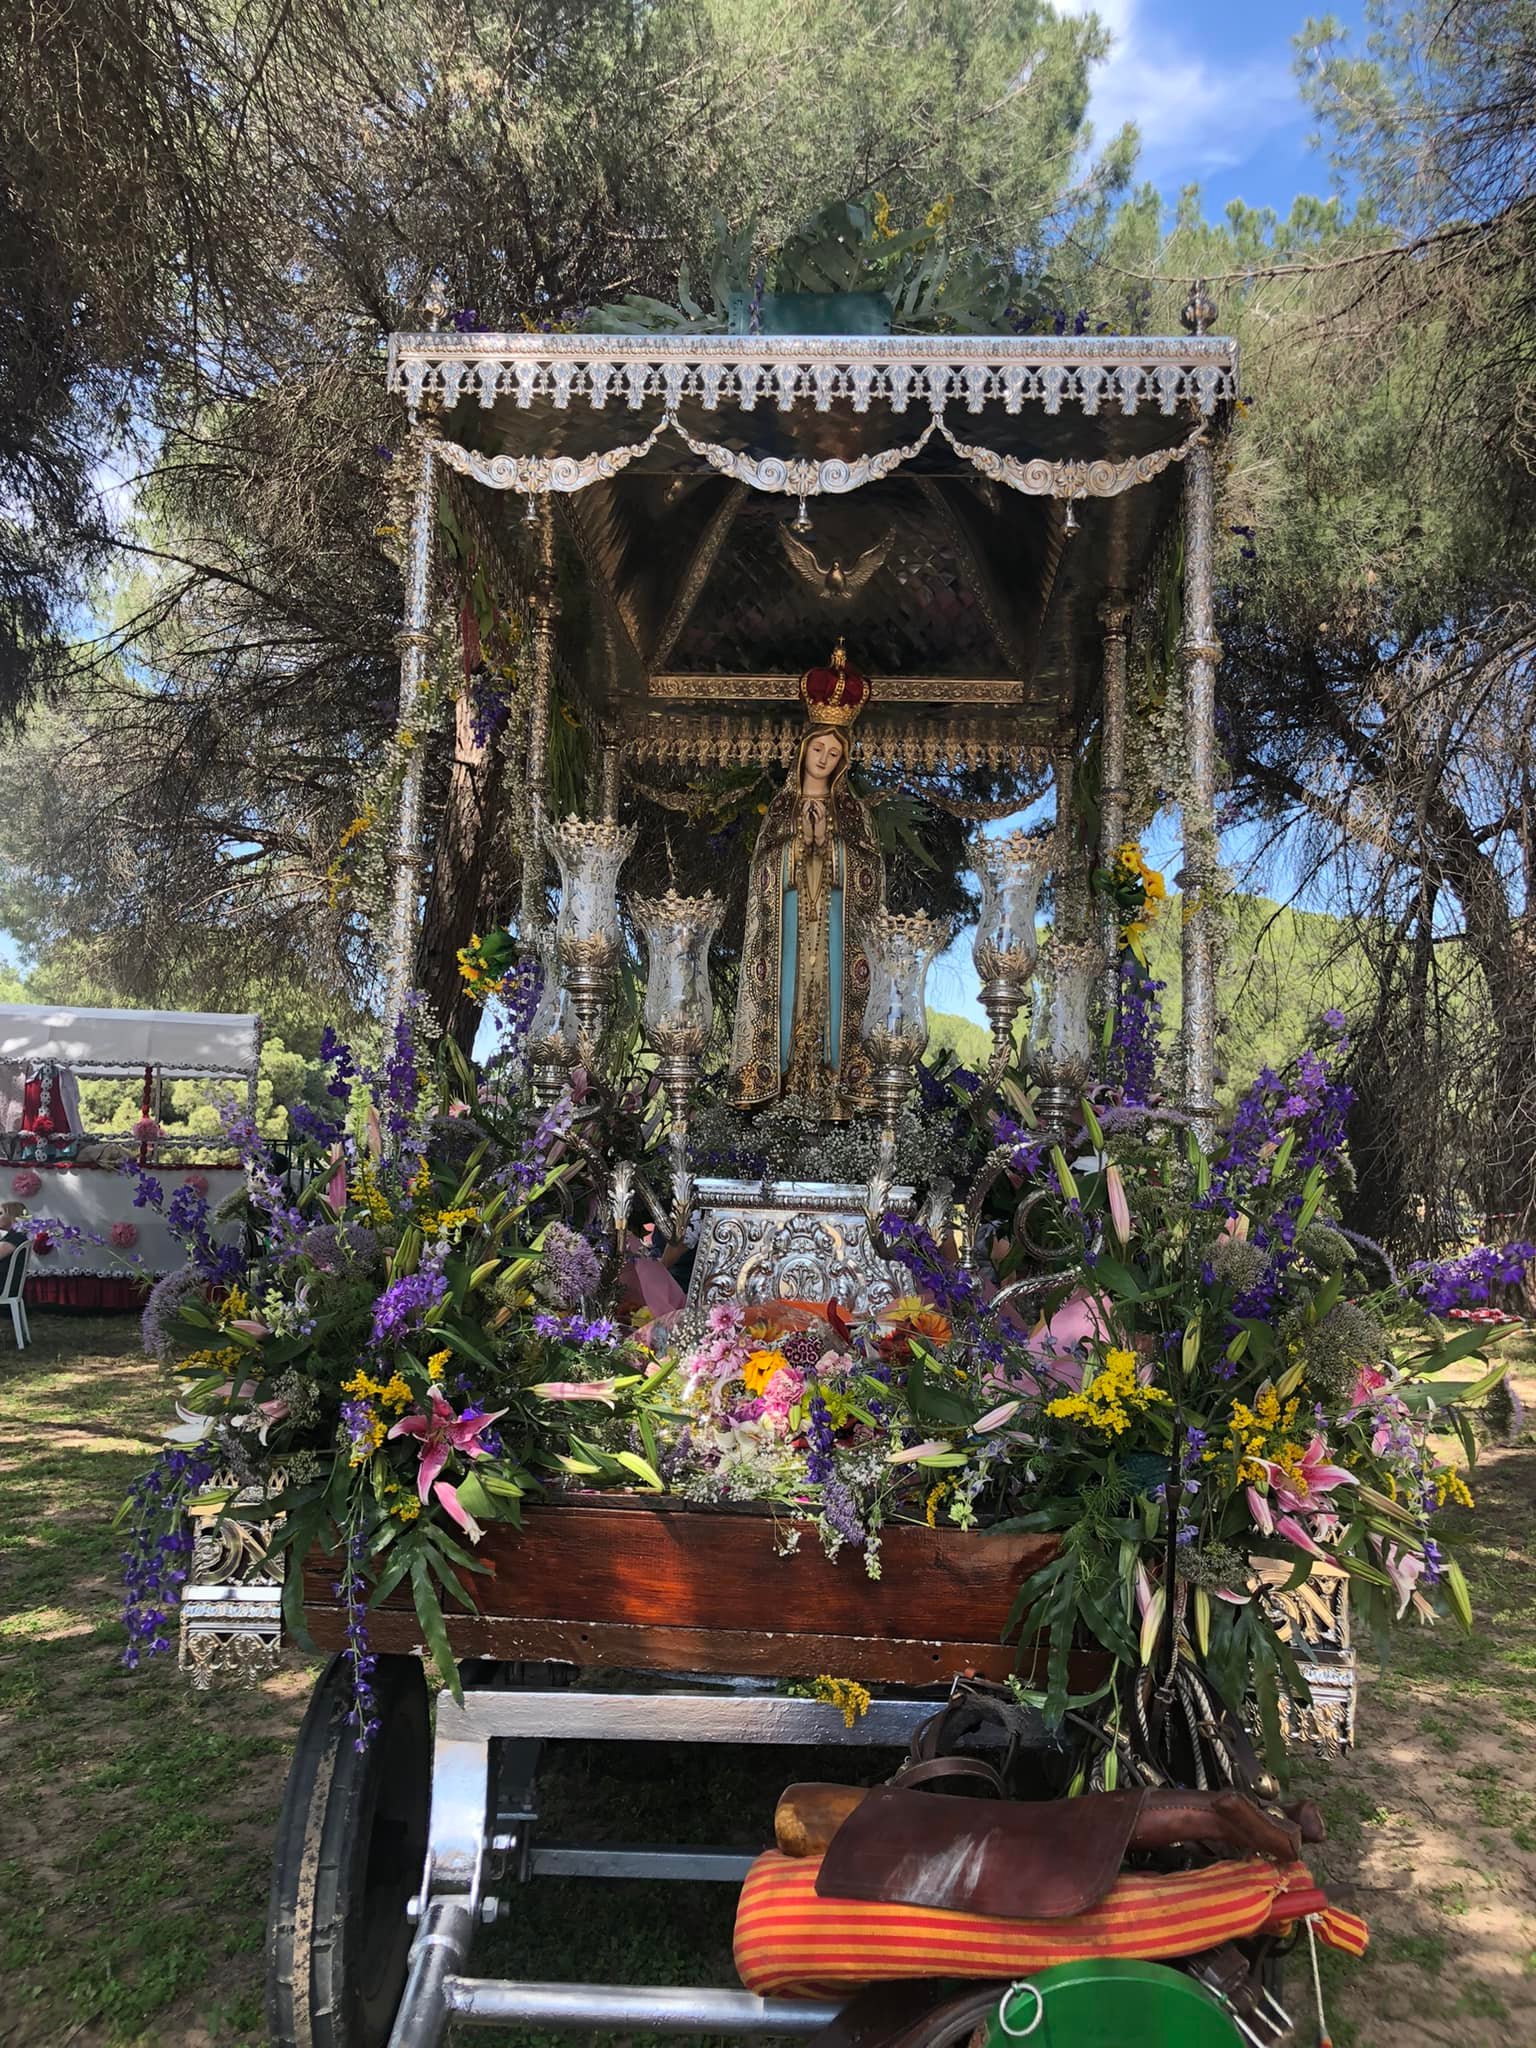 Utrera y Pinzón celebraron sus tradicionales romerias en honor a Ntra. Sra. de Fátima y Ntra. Sra. de las Marismas respectivamente